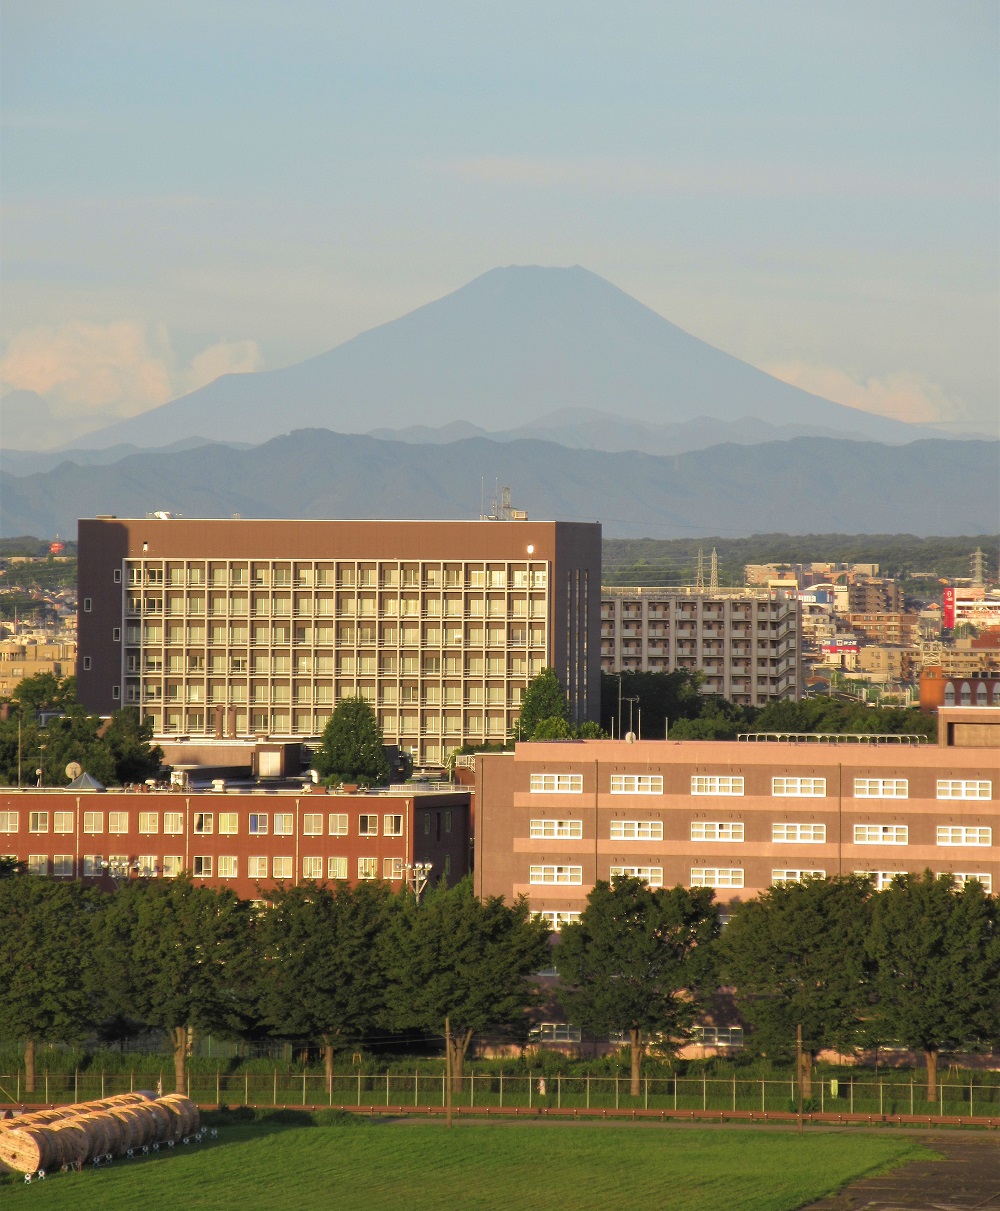 2018.08.15 5:40の富士山